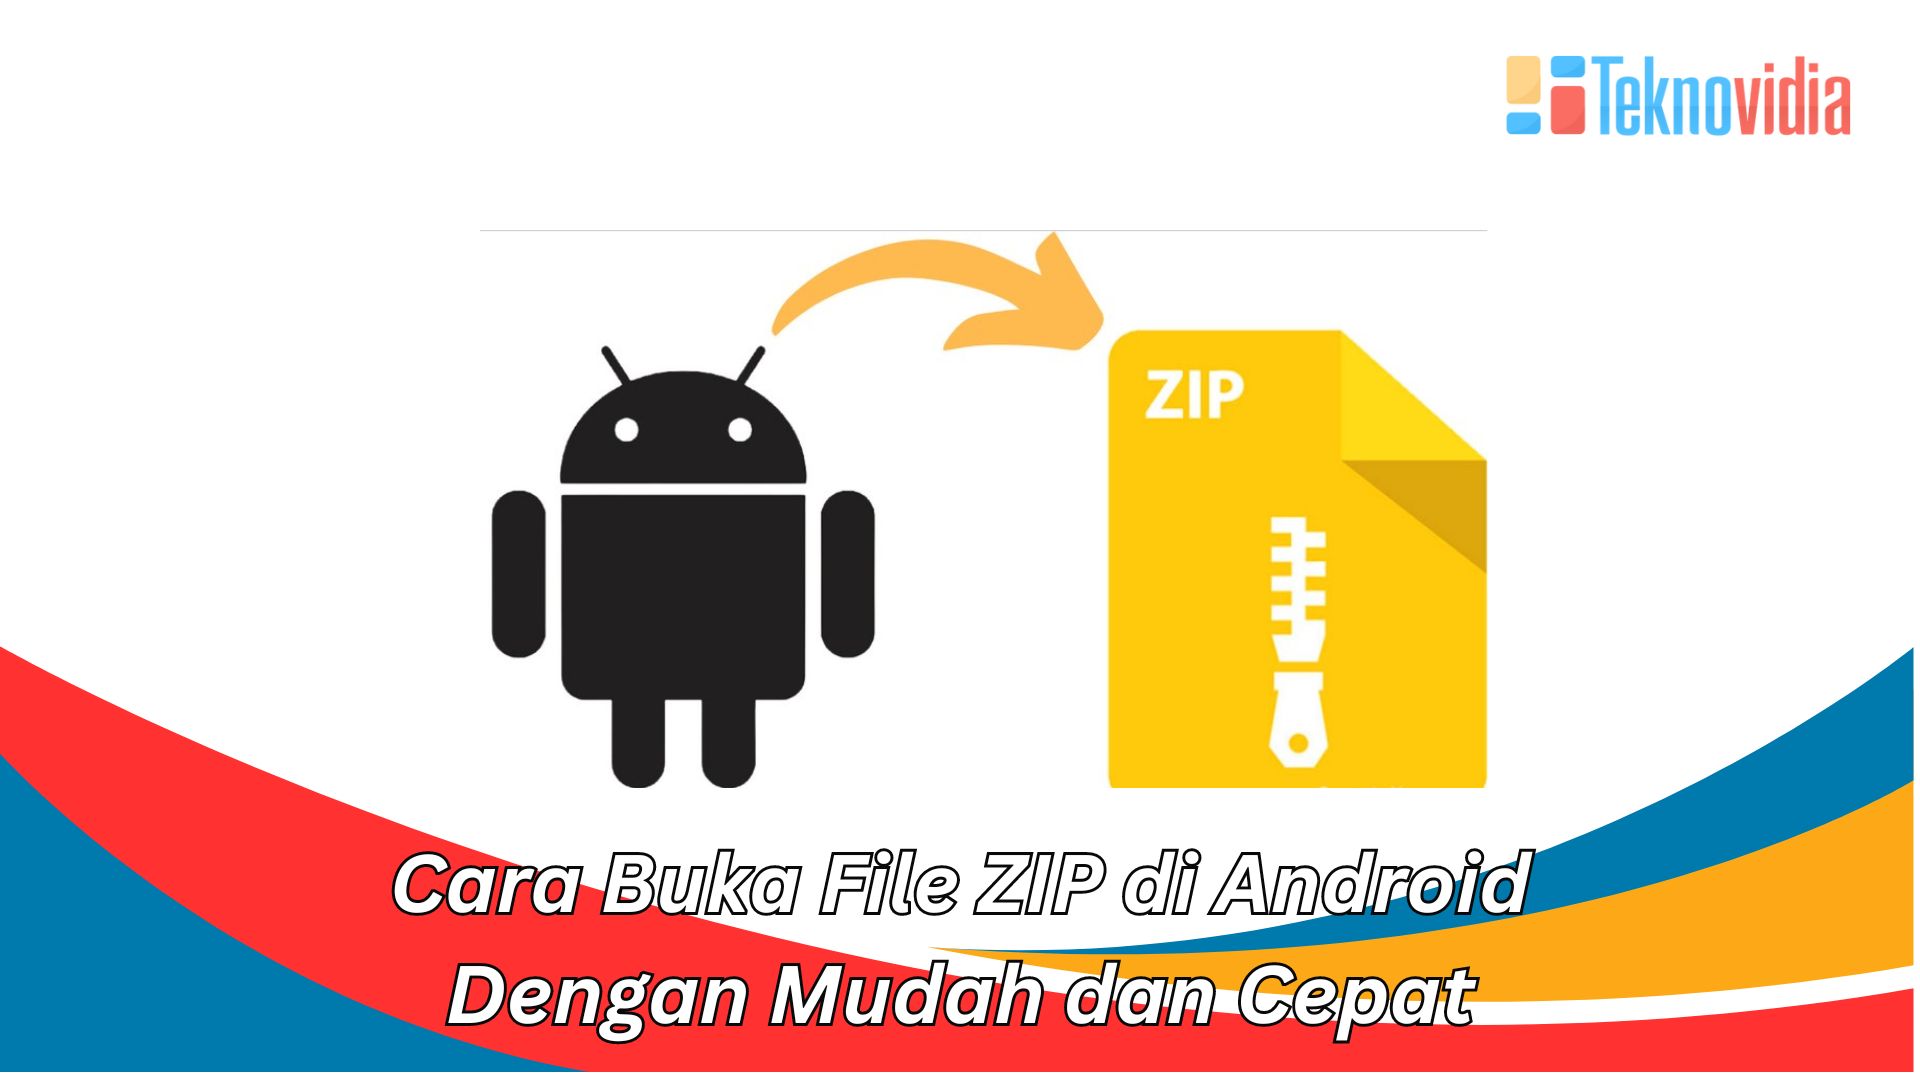 Cara Buka File ZIP di Android Dengan Mudah dan Cepat